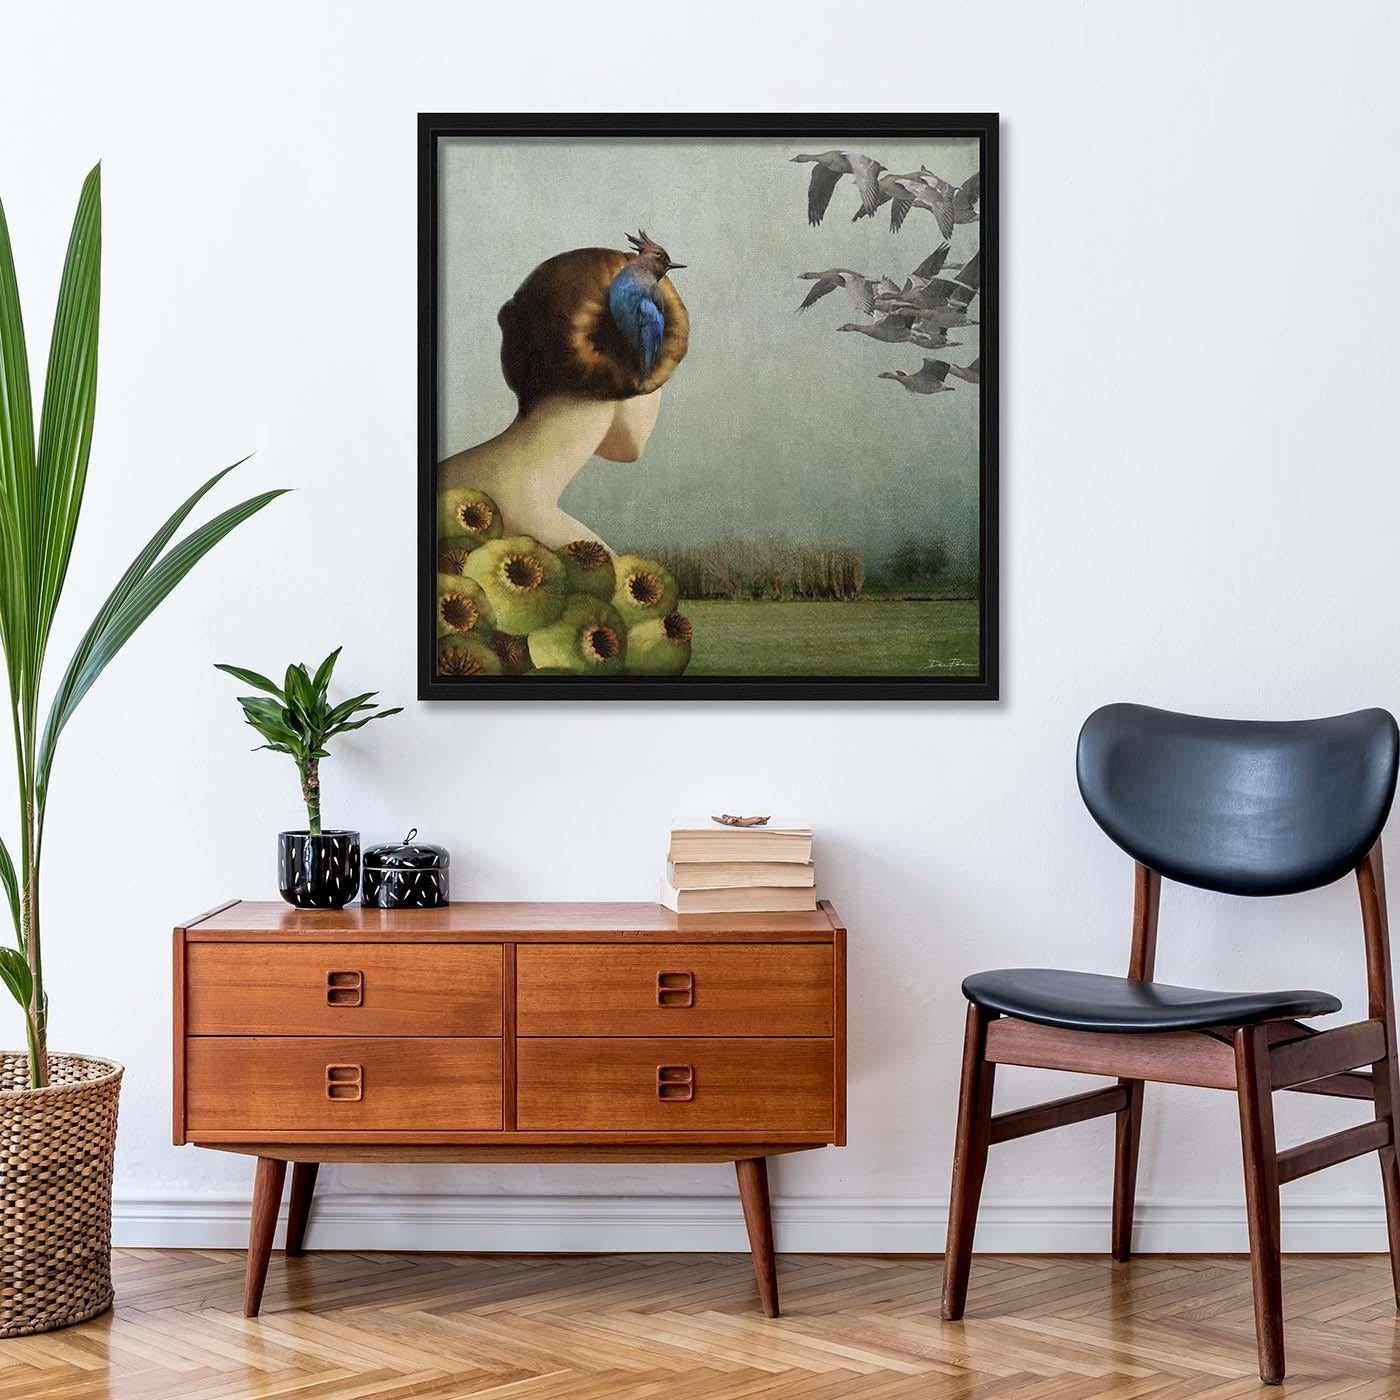 Cette peinture numérique pop-surréaliste représente un pic bleu niché dans les cheveux d'une femme, perdue dans ses pensées heureuses. Vue de dos, la figure féminine regarde les horizons plombés du destin, ponctués par un troupeau d'oies grises,